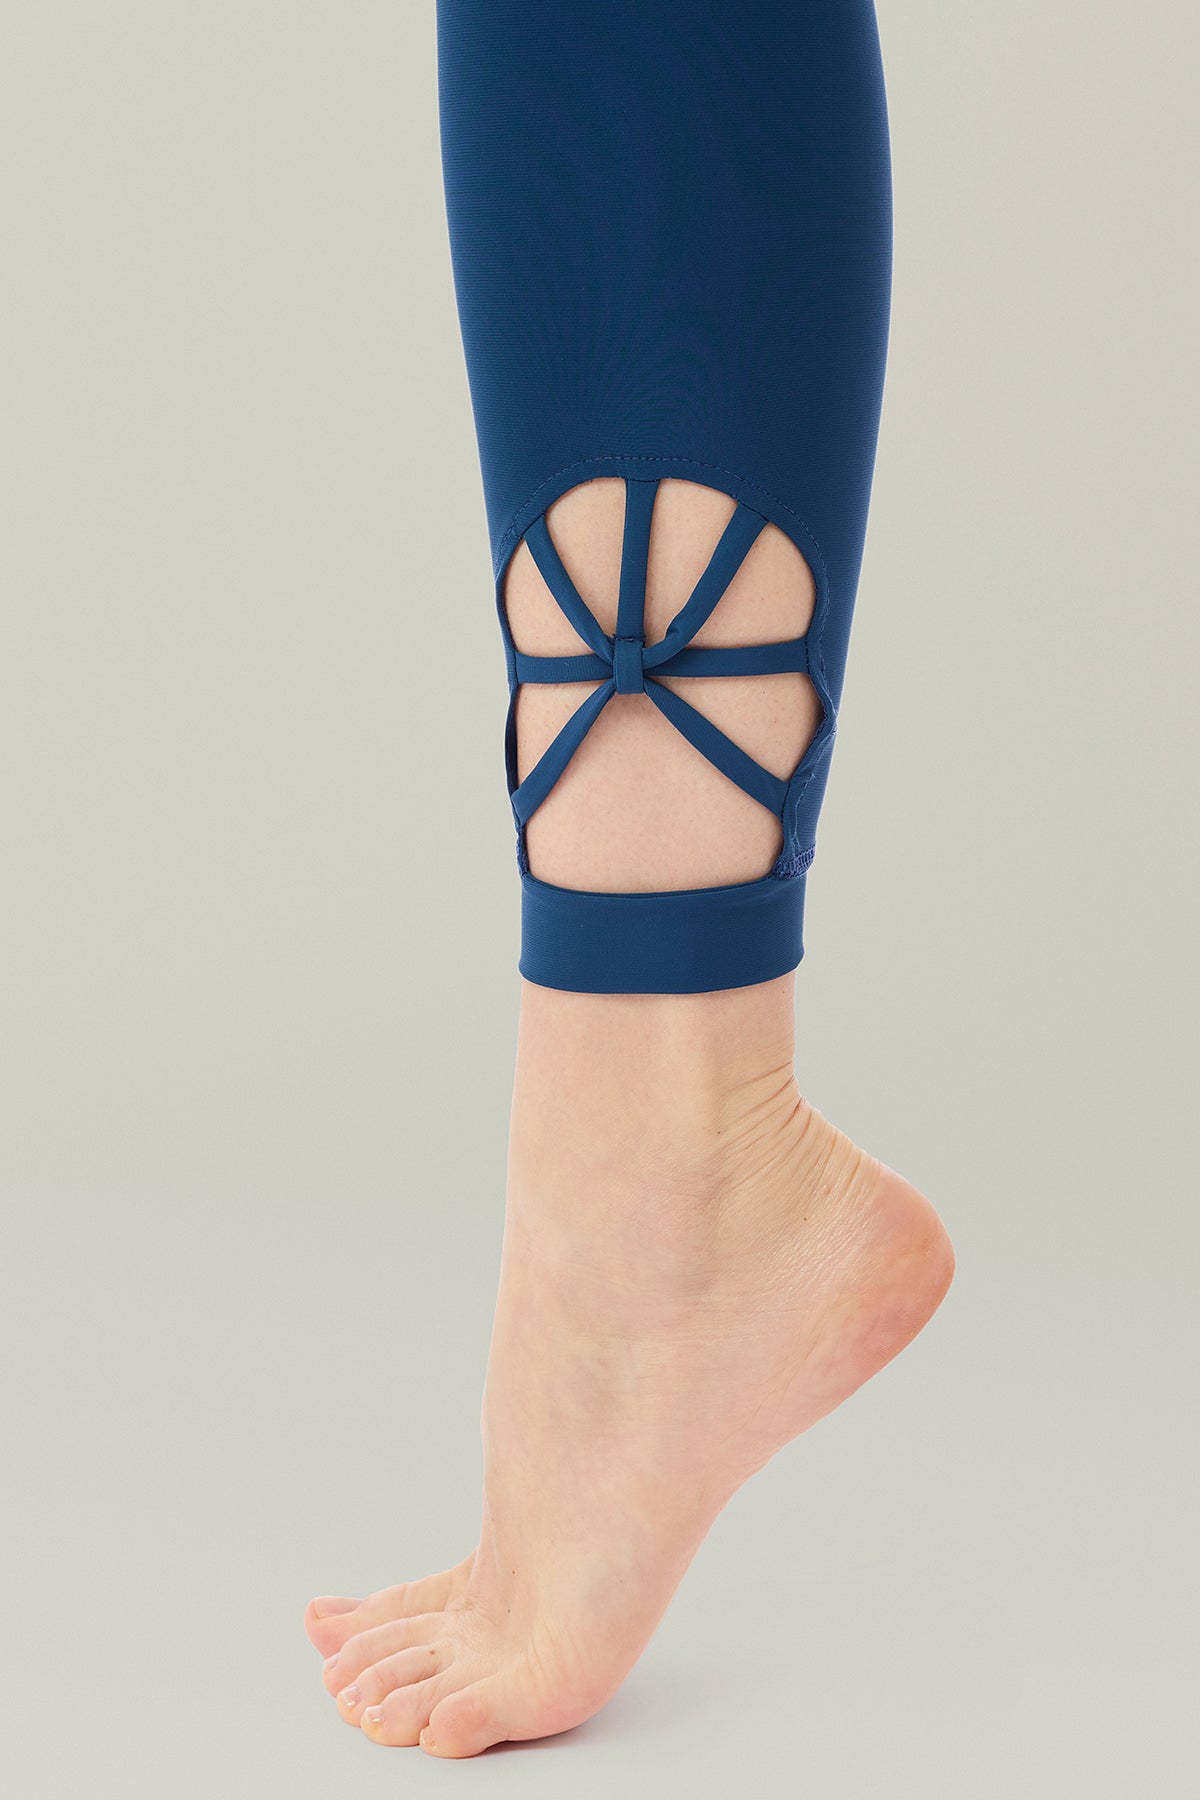 Mandala Spider Legging for women in the color New York